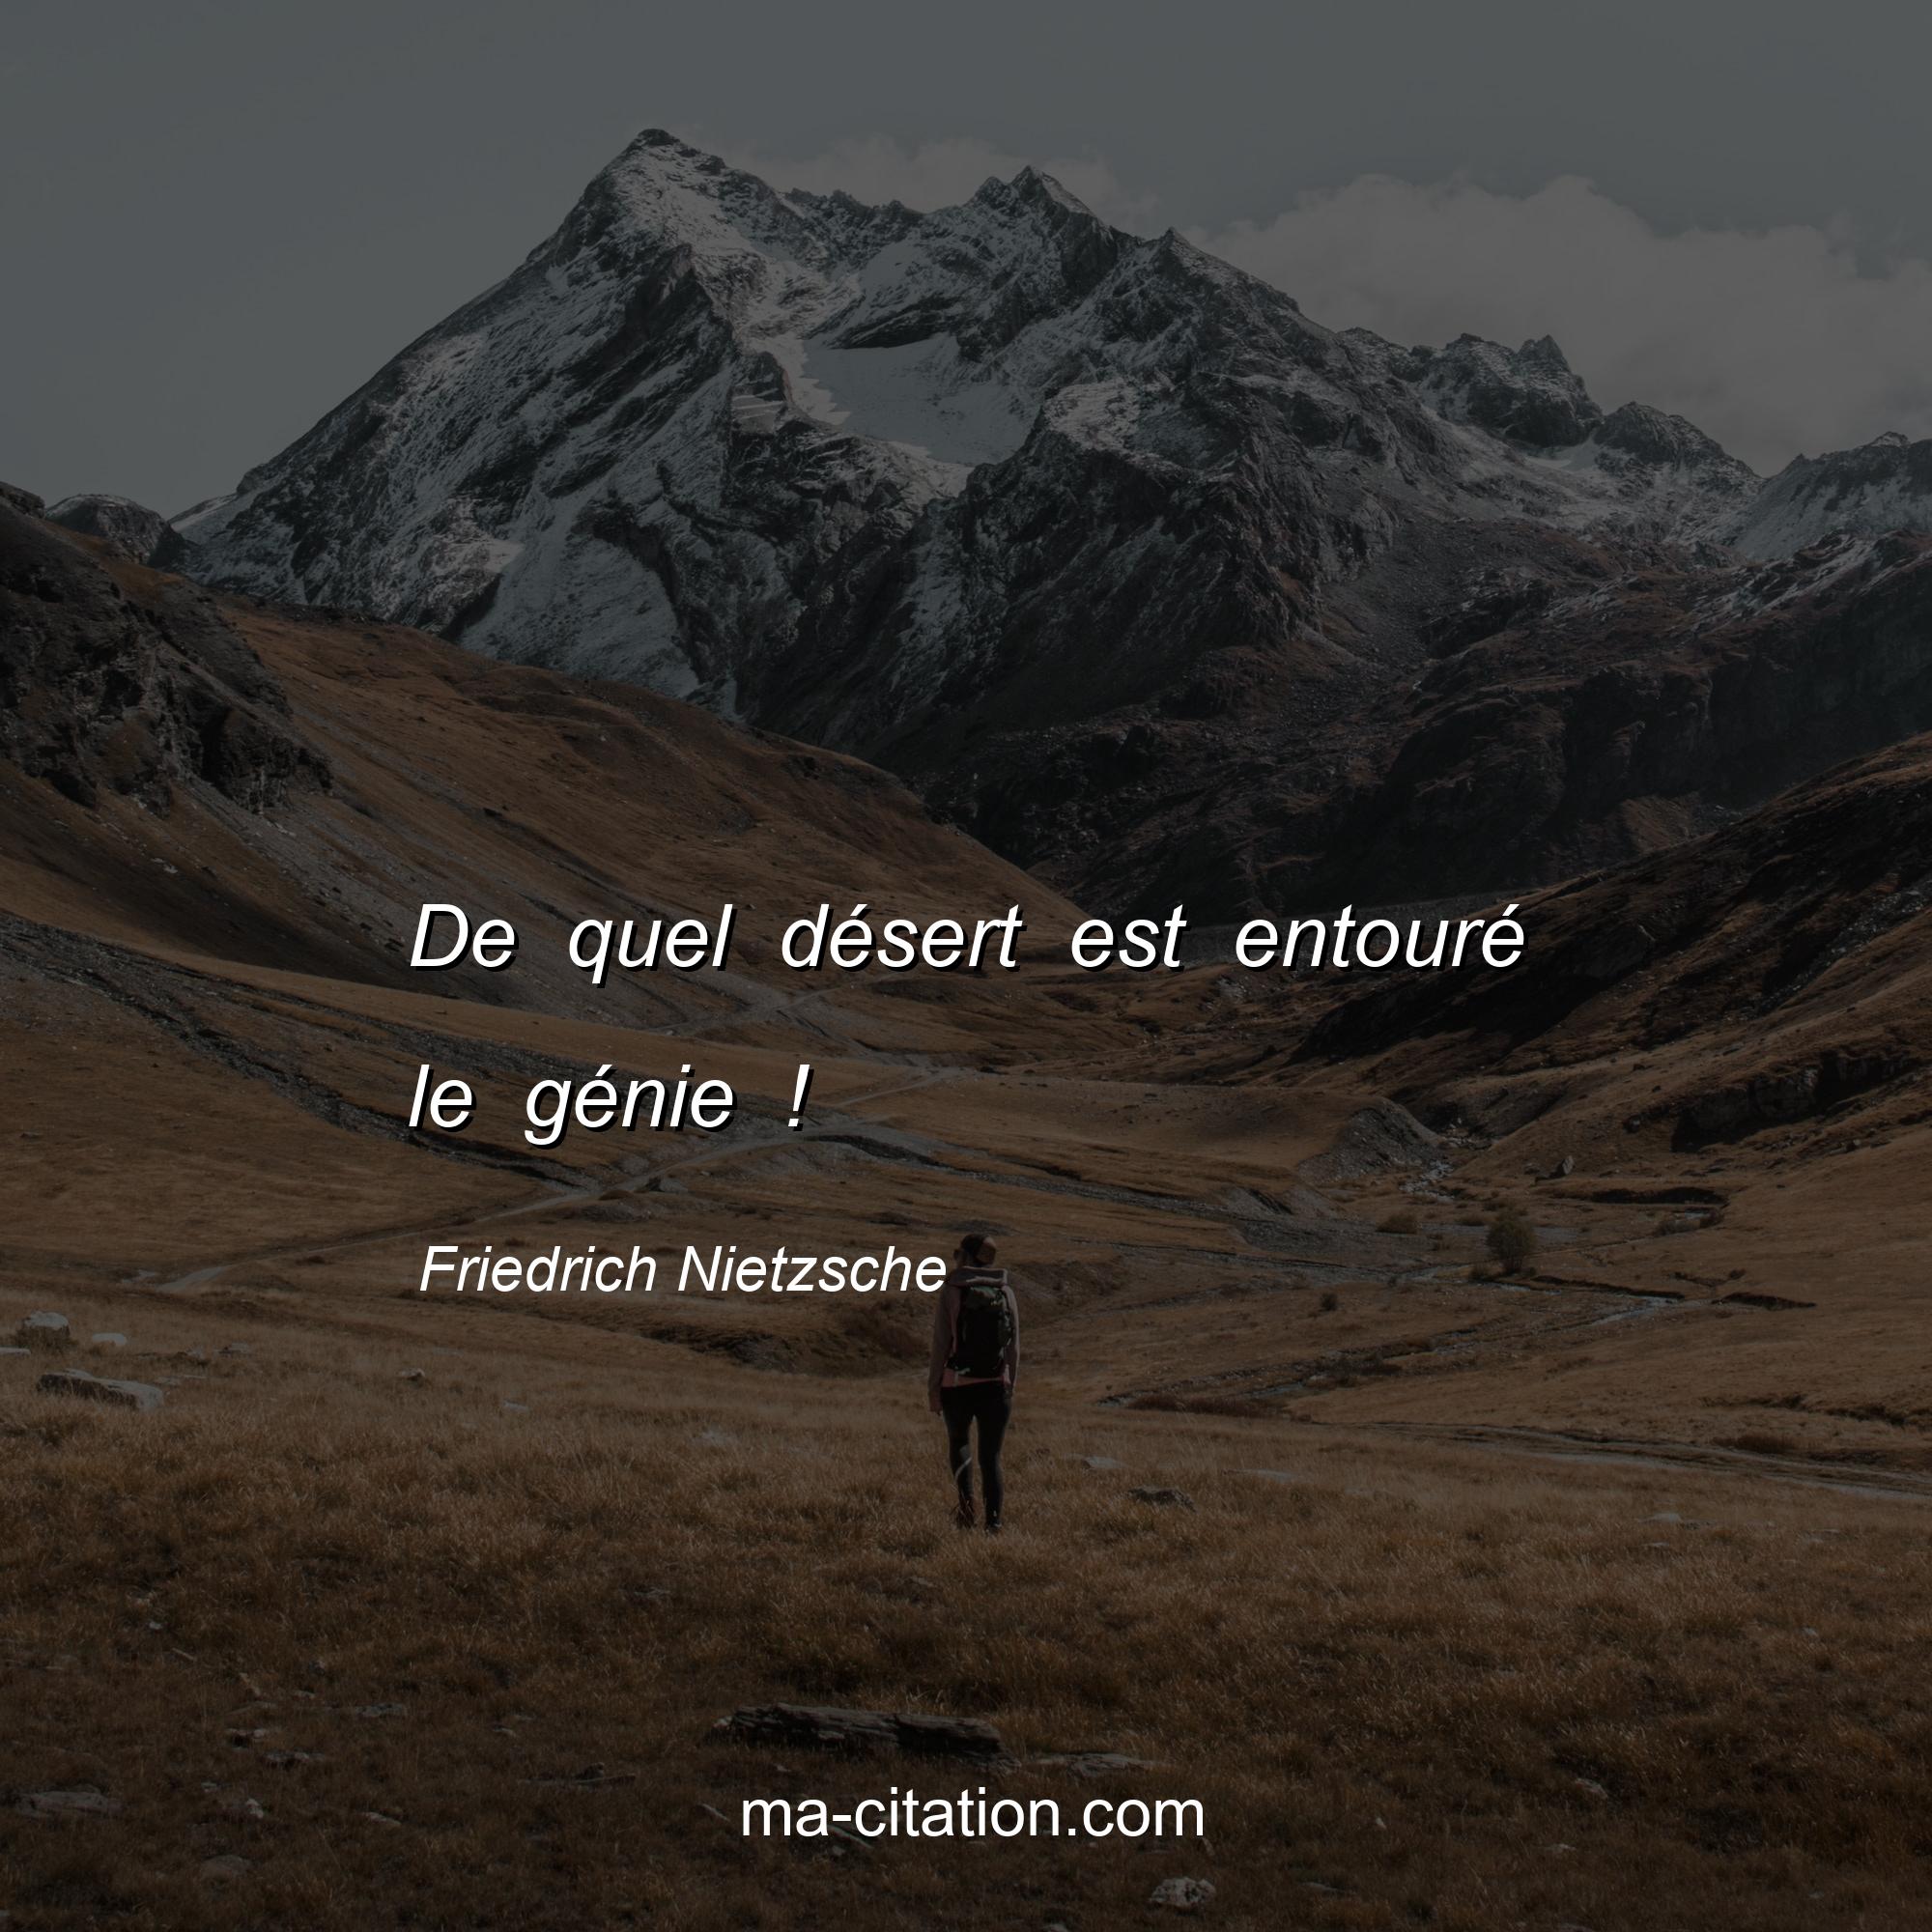 Friedrich Nietzsche : De quel désert est entouré le génie !